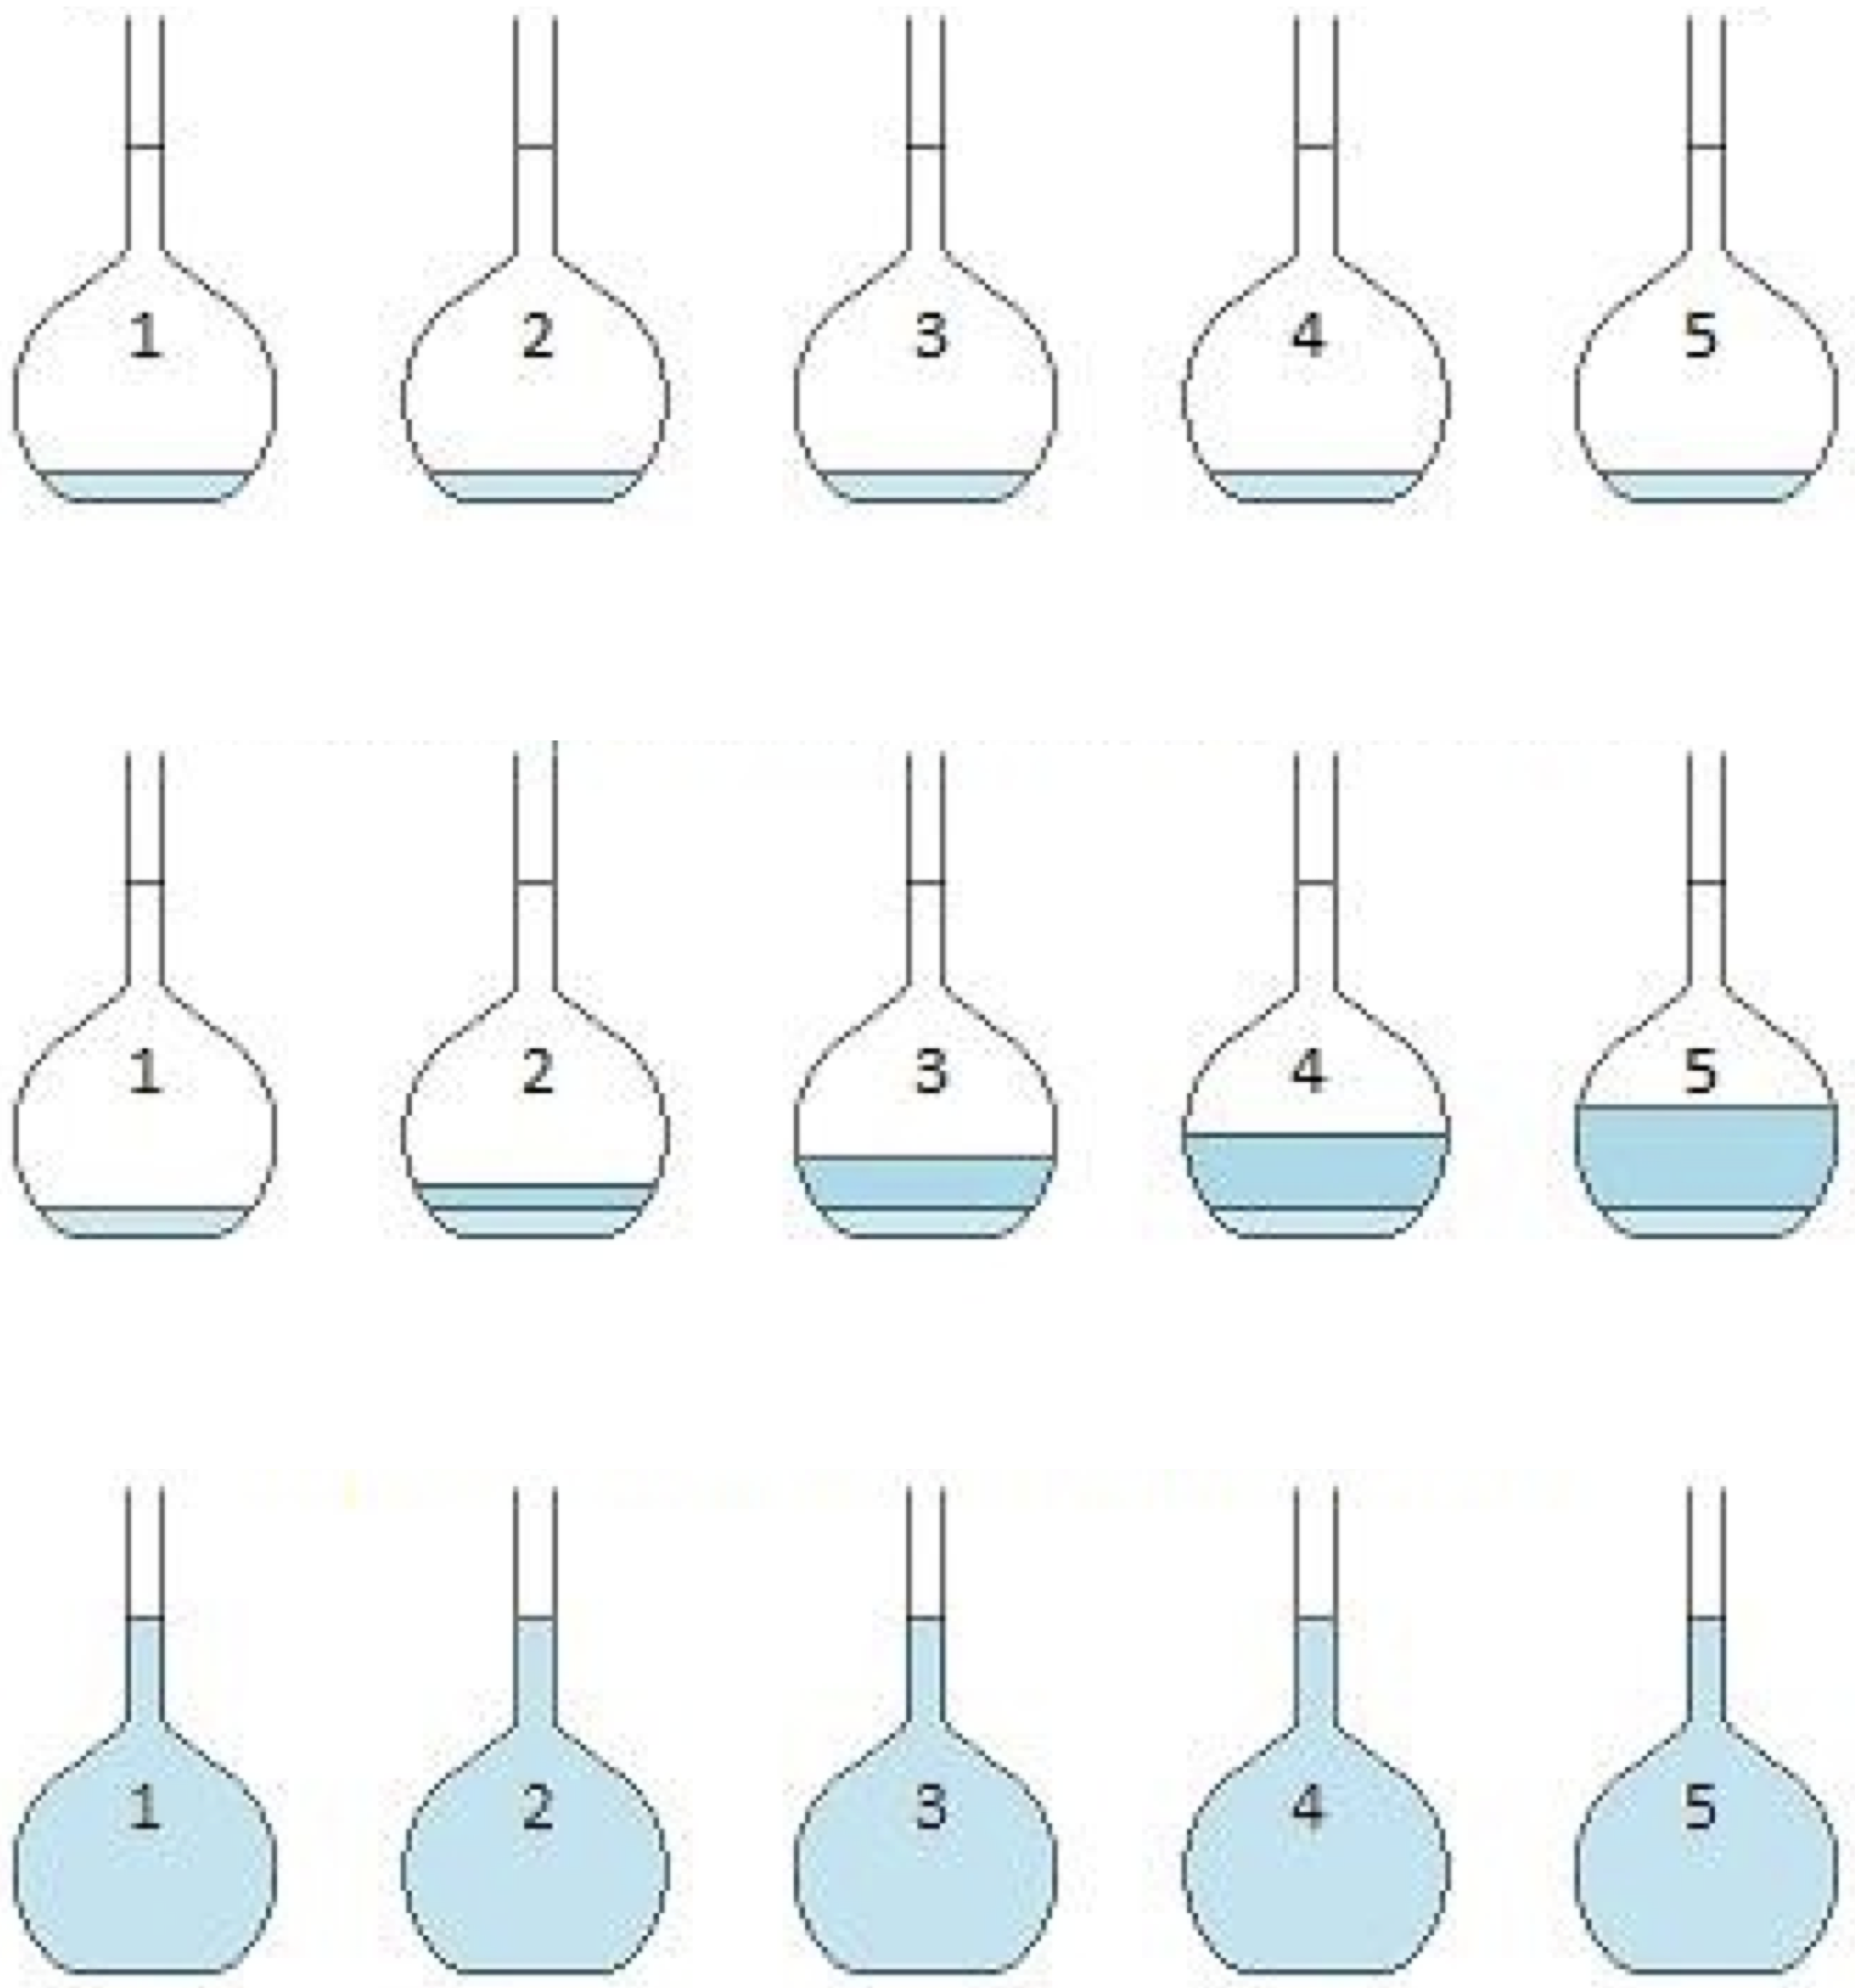 Diseño experimental de la adición conocida. Cortesía de Lins4y via Wikimedia Commons